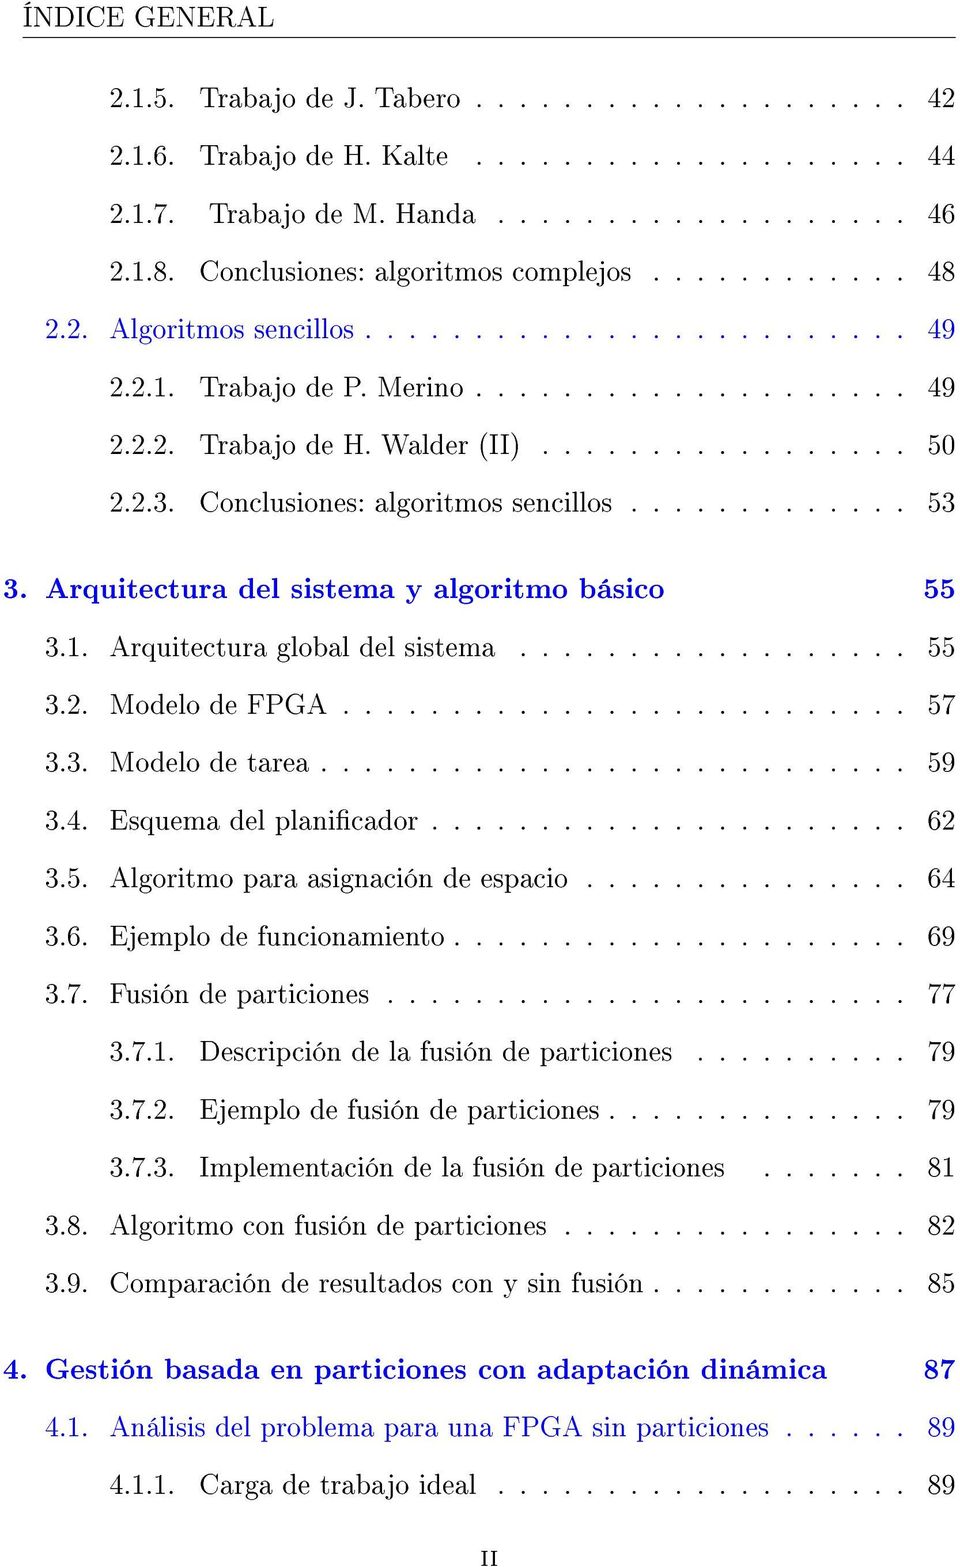 2.3. Conclusiones: algoritmos sencillos............. 53 3. Arquitectura del sistema y algoritmo básico 55 3.1. Arquitectura global del sistema.................. 55 3.2. Modelo de FPGA.......................... 57 3.